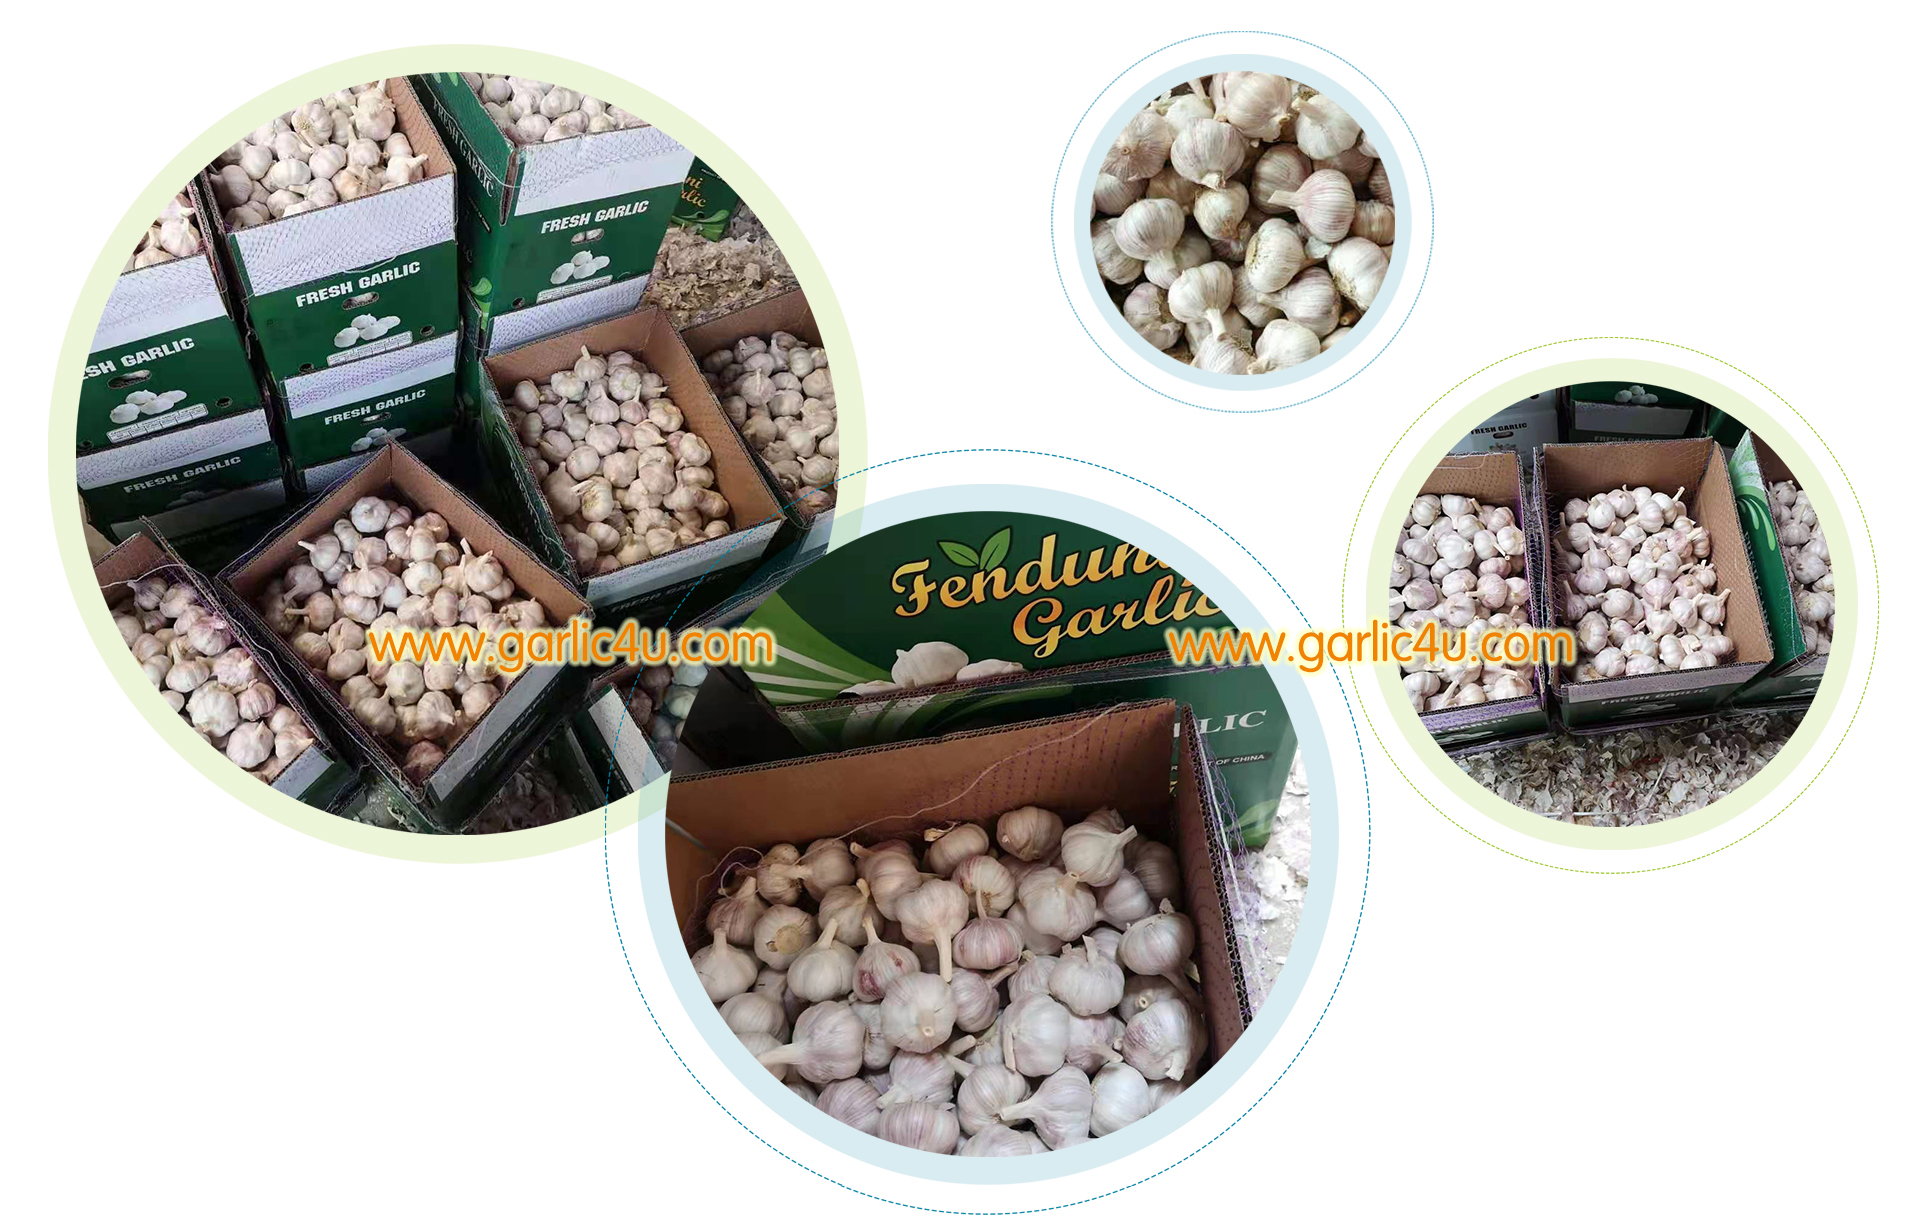 garlic supplier